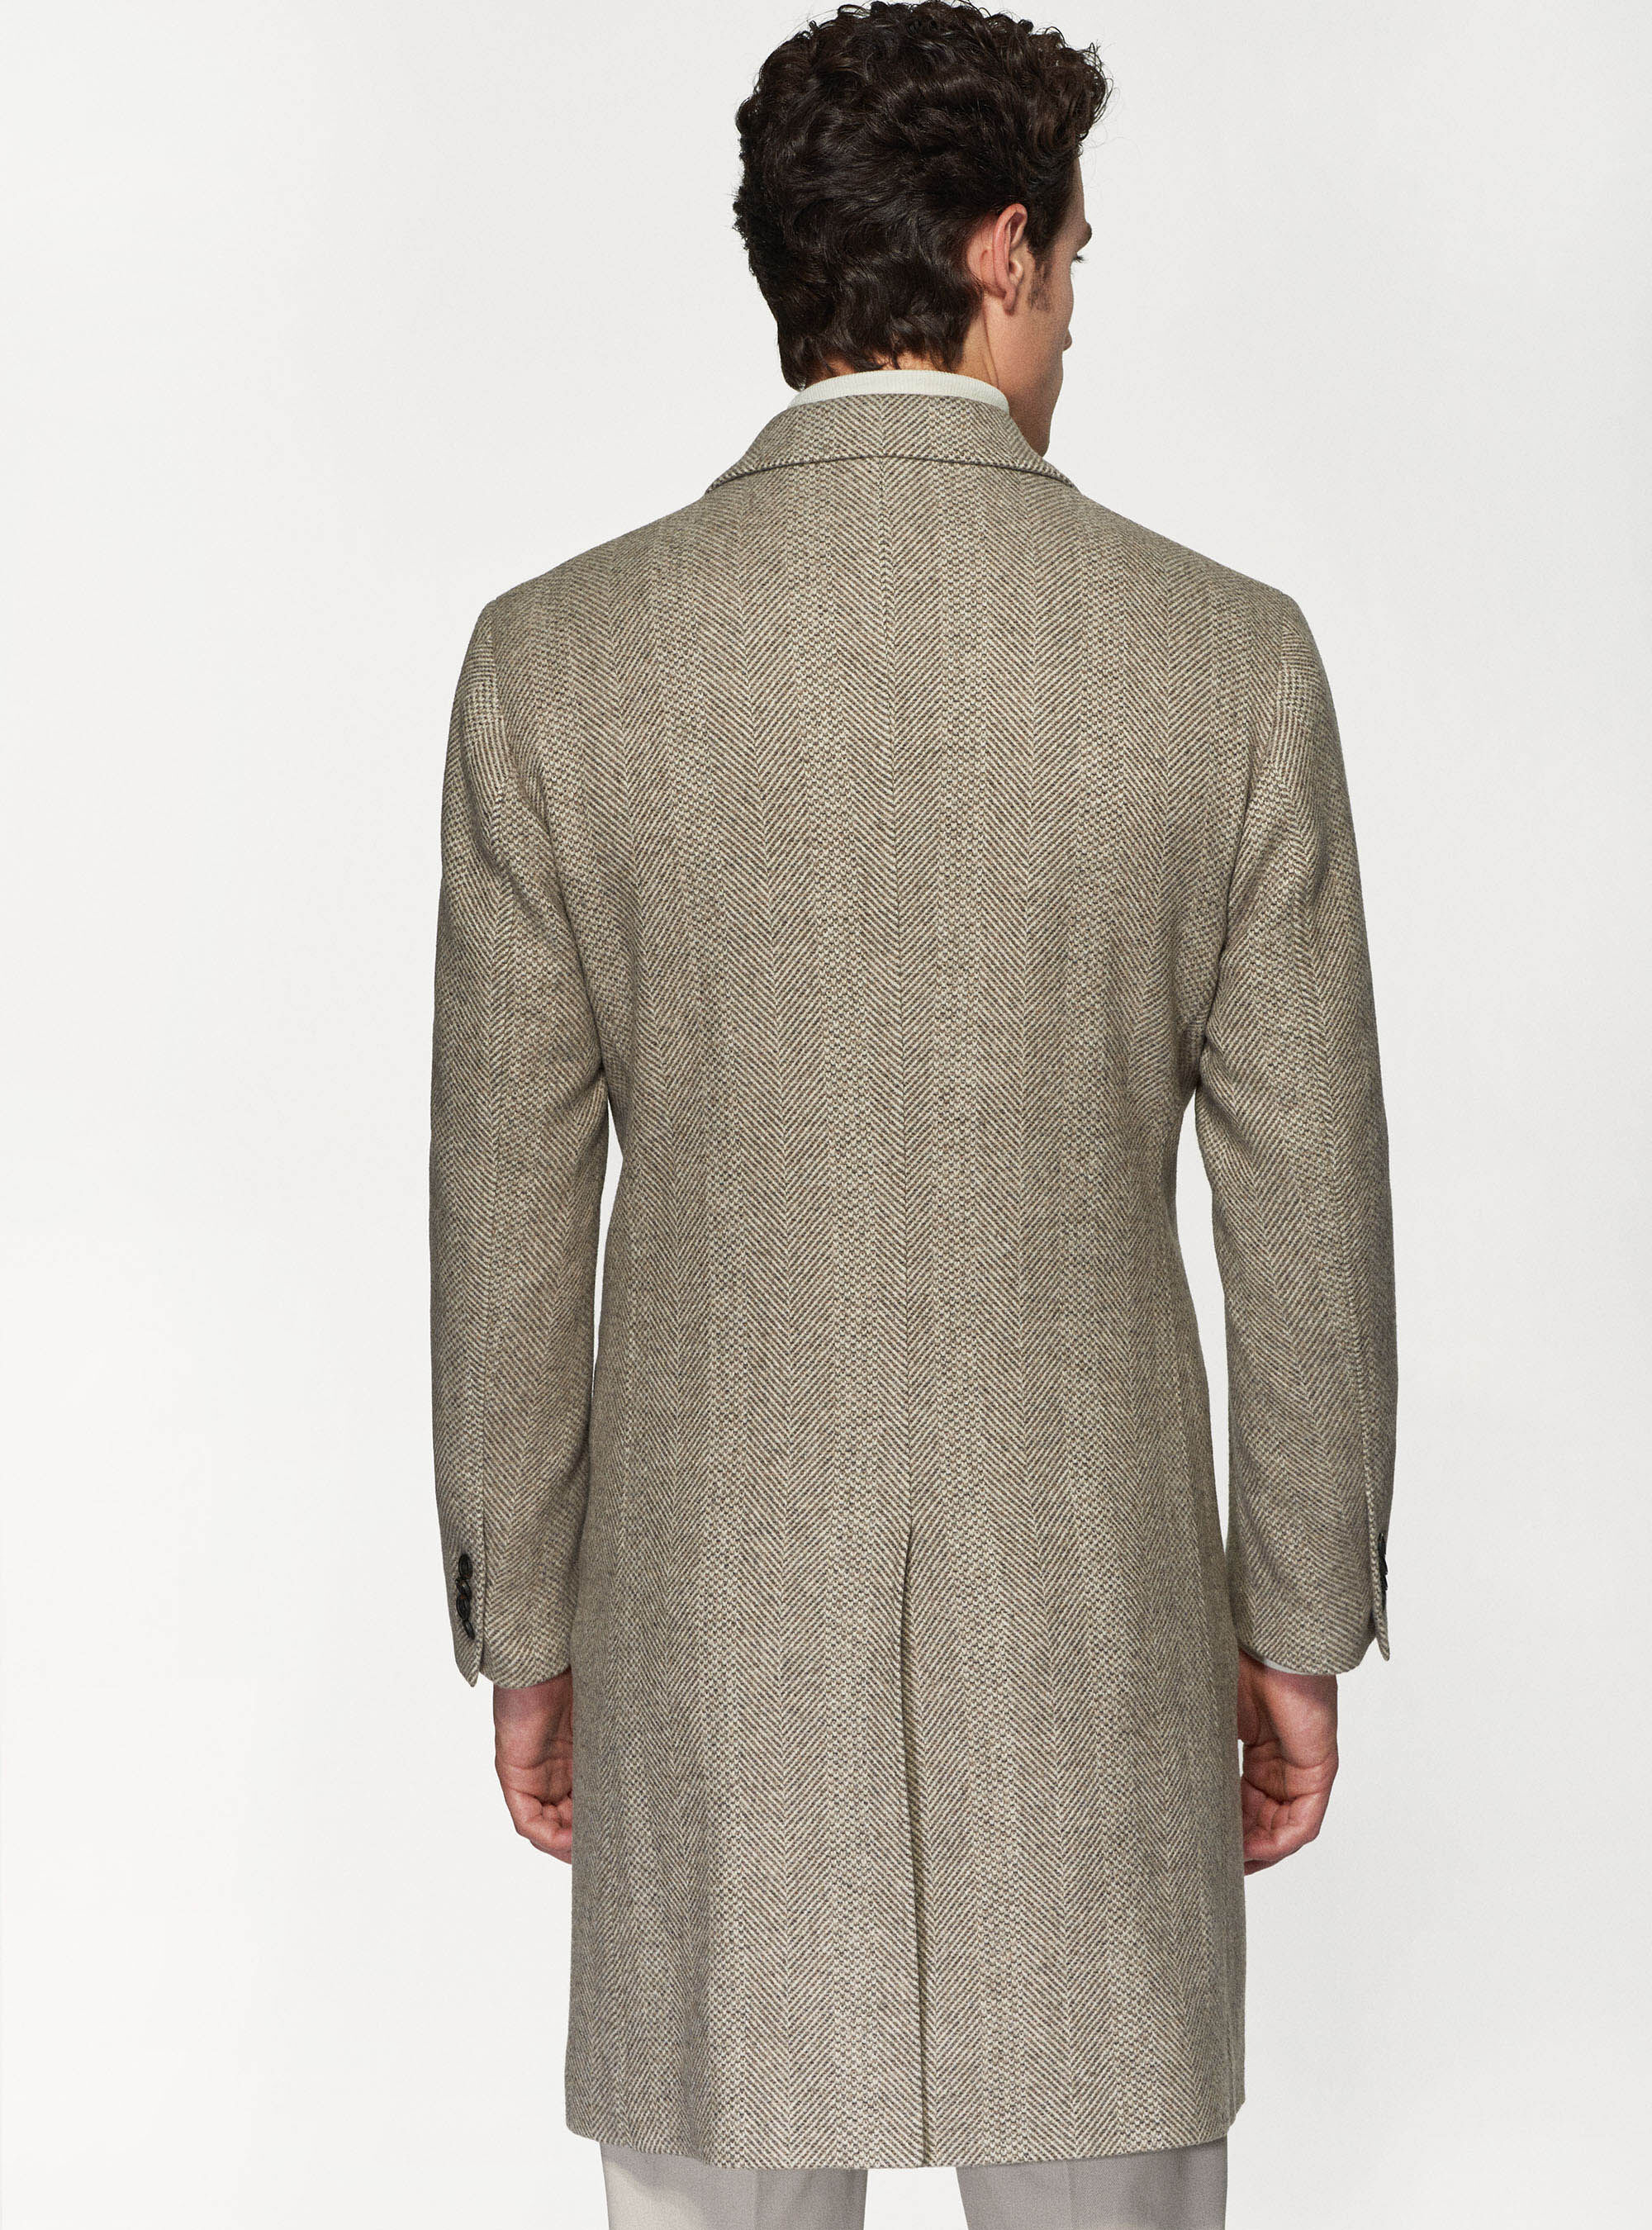 Herringbone wool blend coat